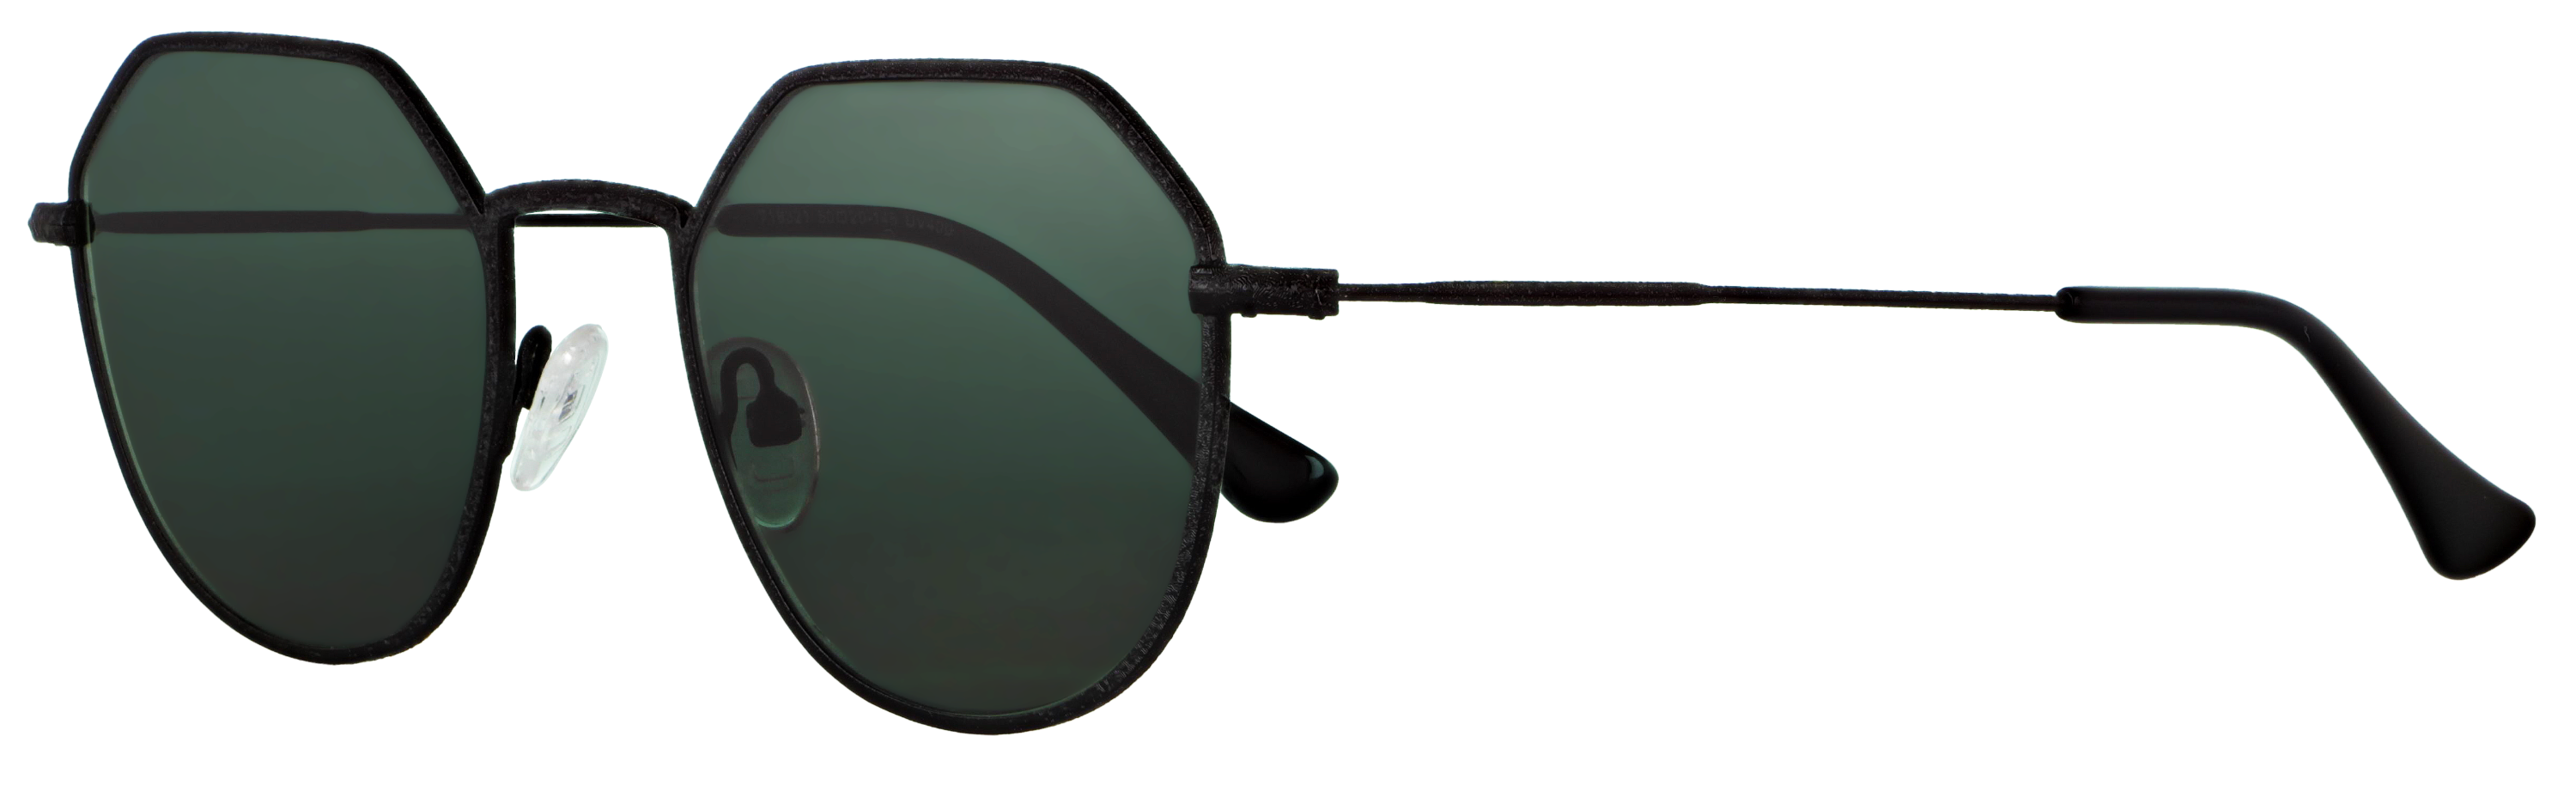 Das Bild zeigt die Sonnenbrille 718321 von der Marke Abele Optik in schwarz gemustert.